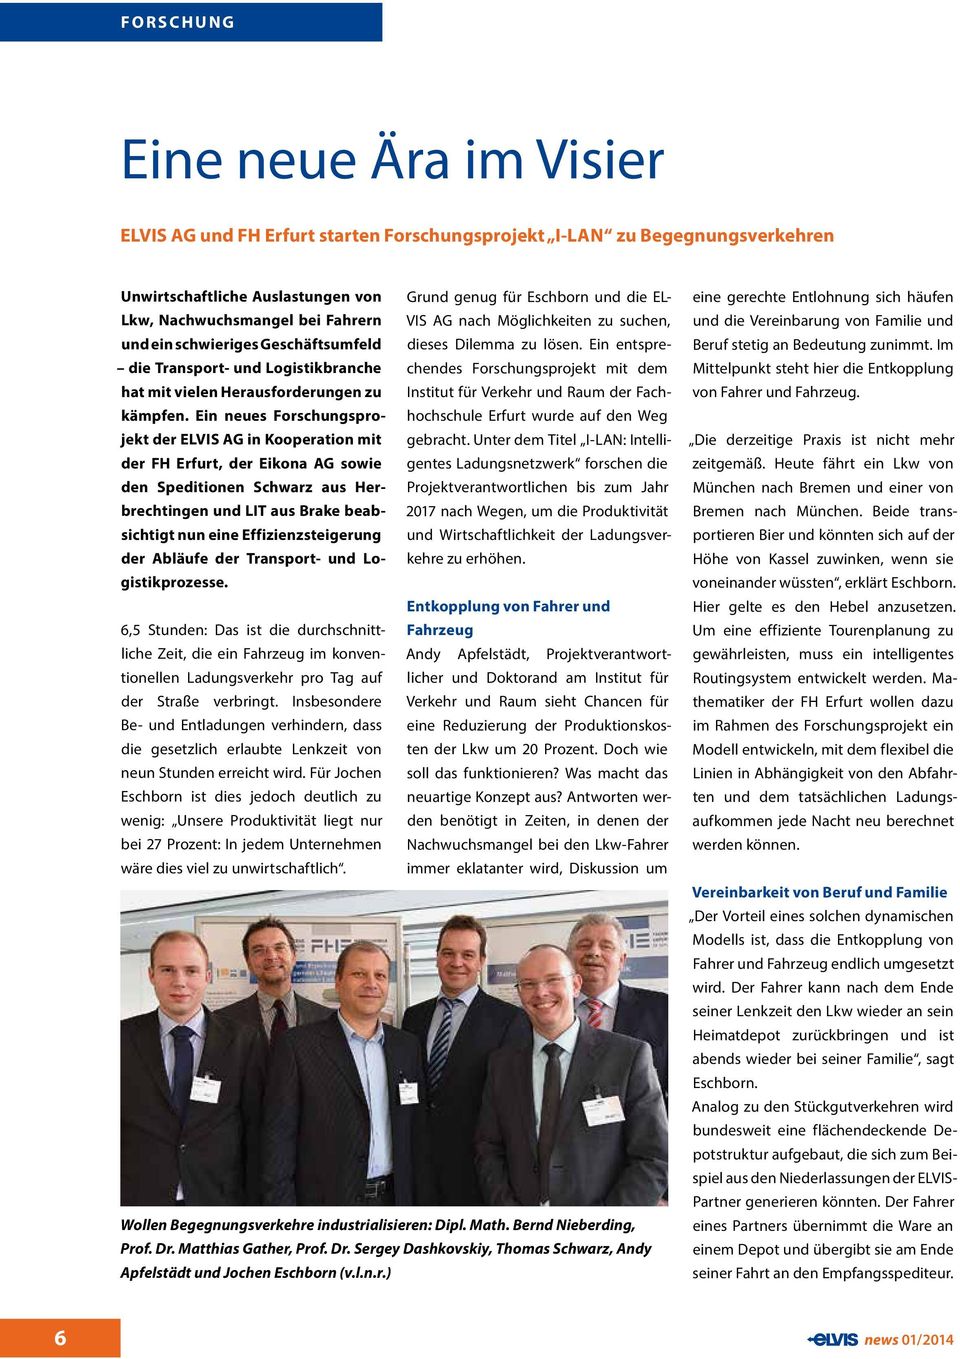 Ein neues Forschungsprojekt der ELVIS AG in Kooperation mit der FH Erfurt, der Eikona AG sowie den Speditionen Schwarz aus Herbrechtingen und LIT aus Brake beabsichtigt nun eine Effizienzsteigerung